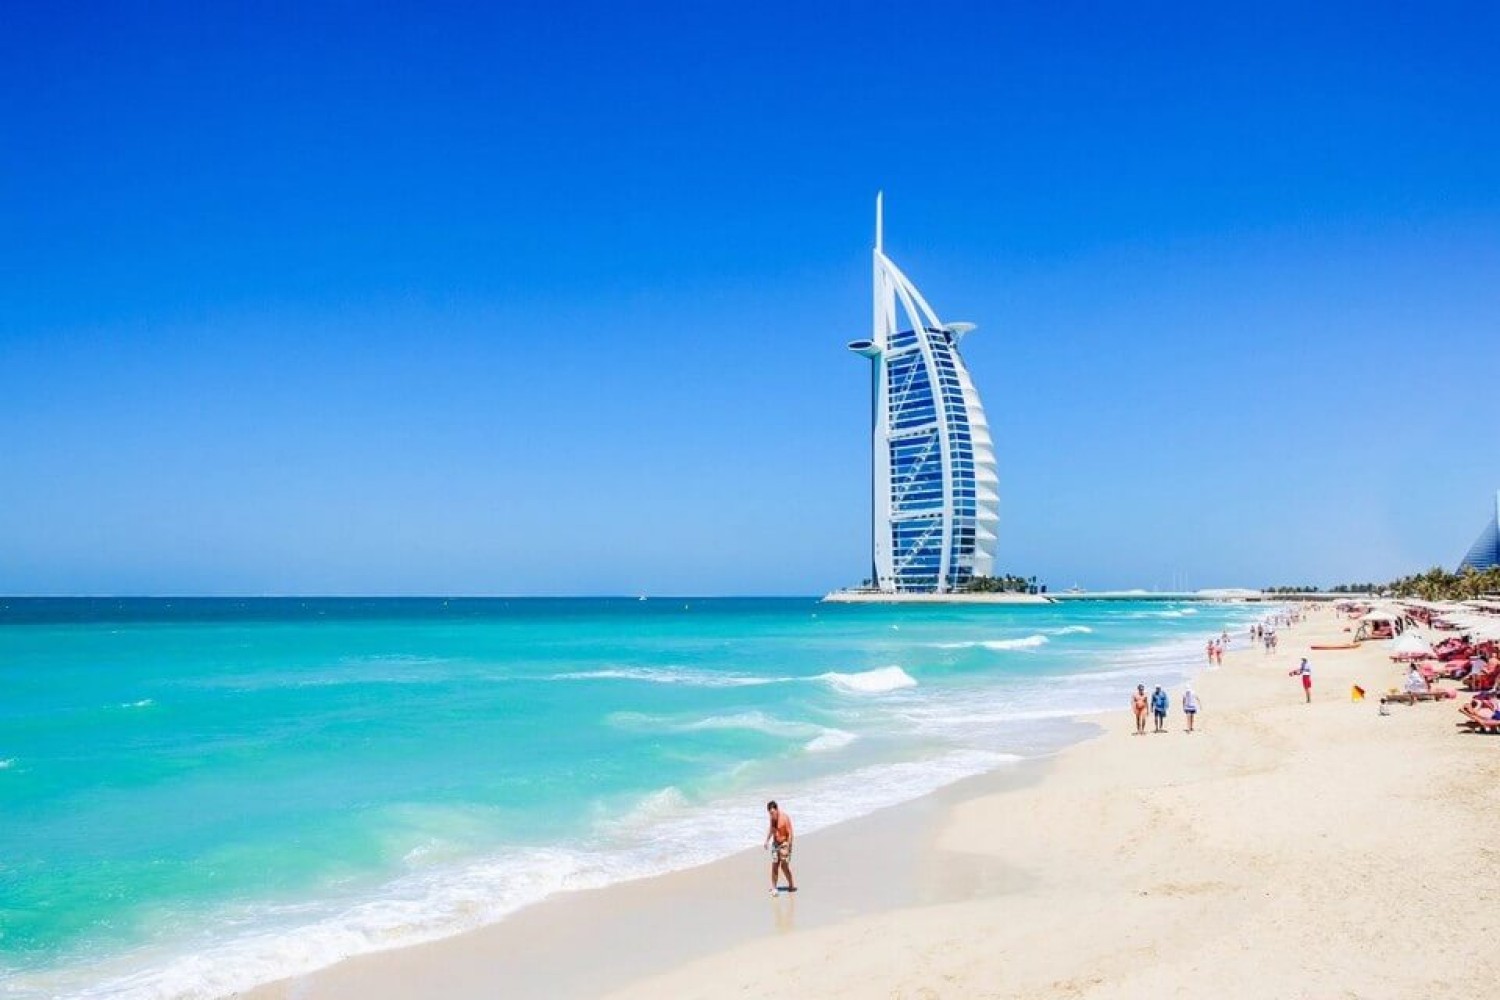 Wonderful Dubai